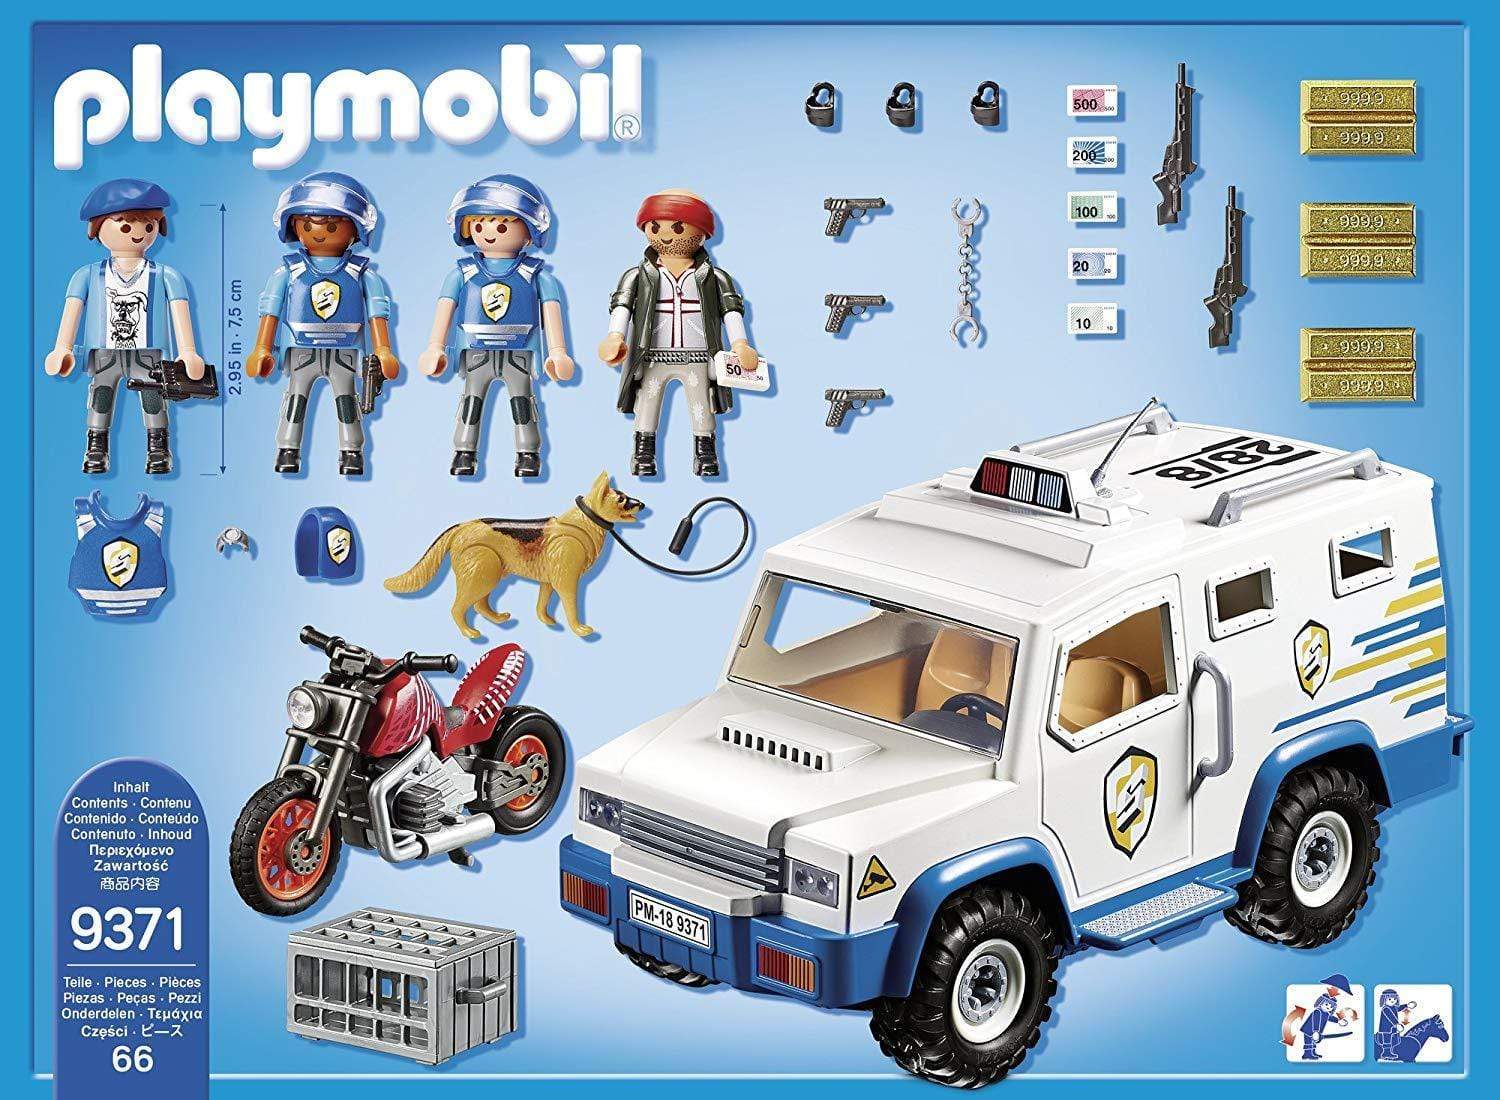 9371 פליימוביל רכב משטרה להעברת כספים-zrizi toys